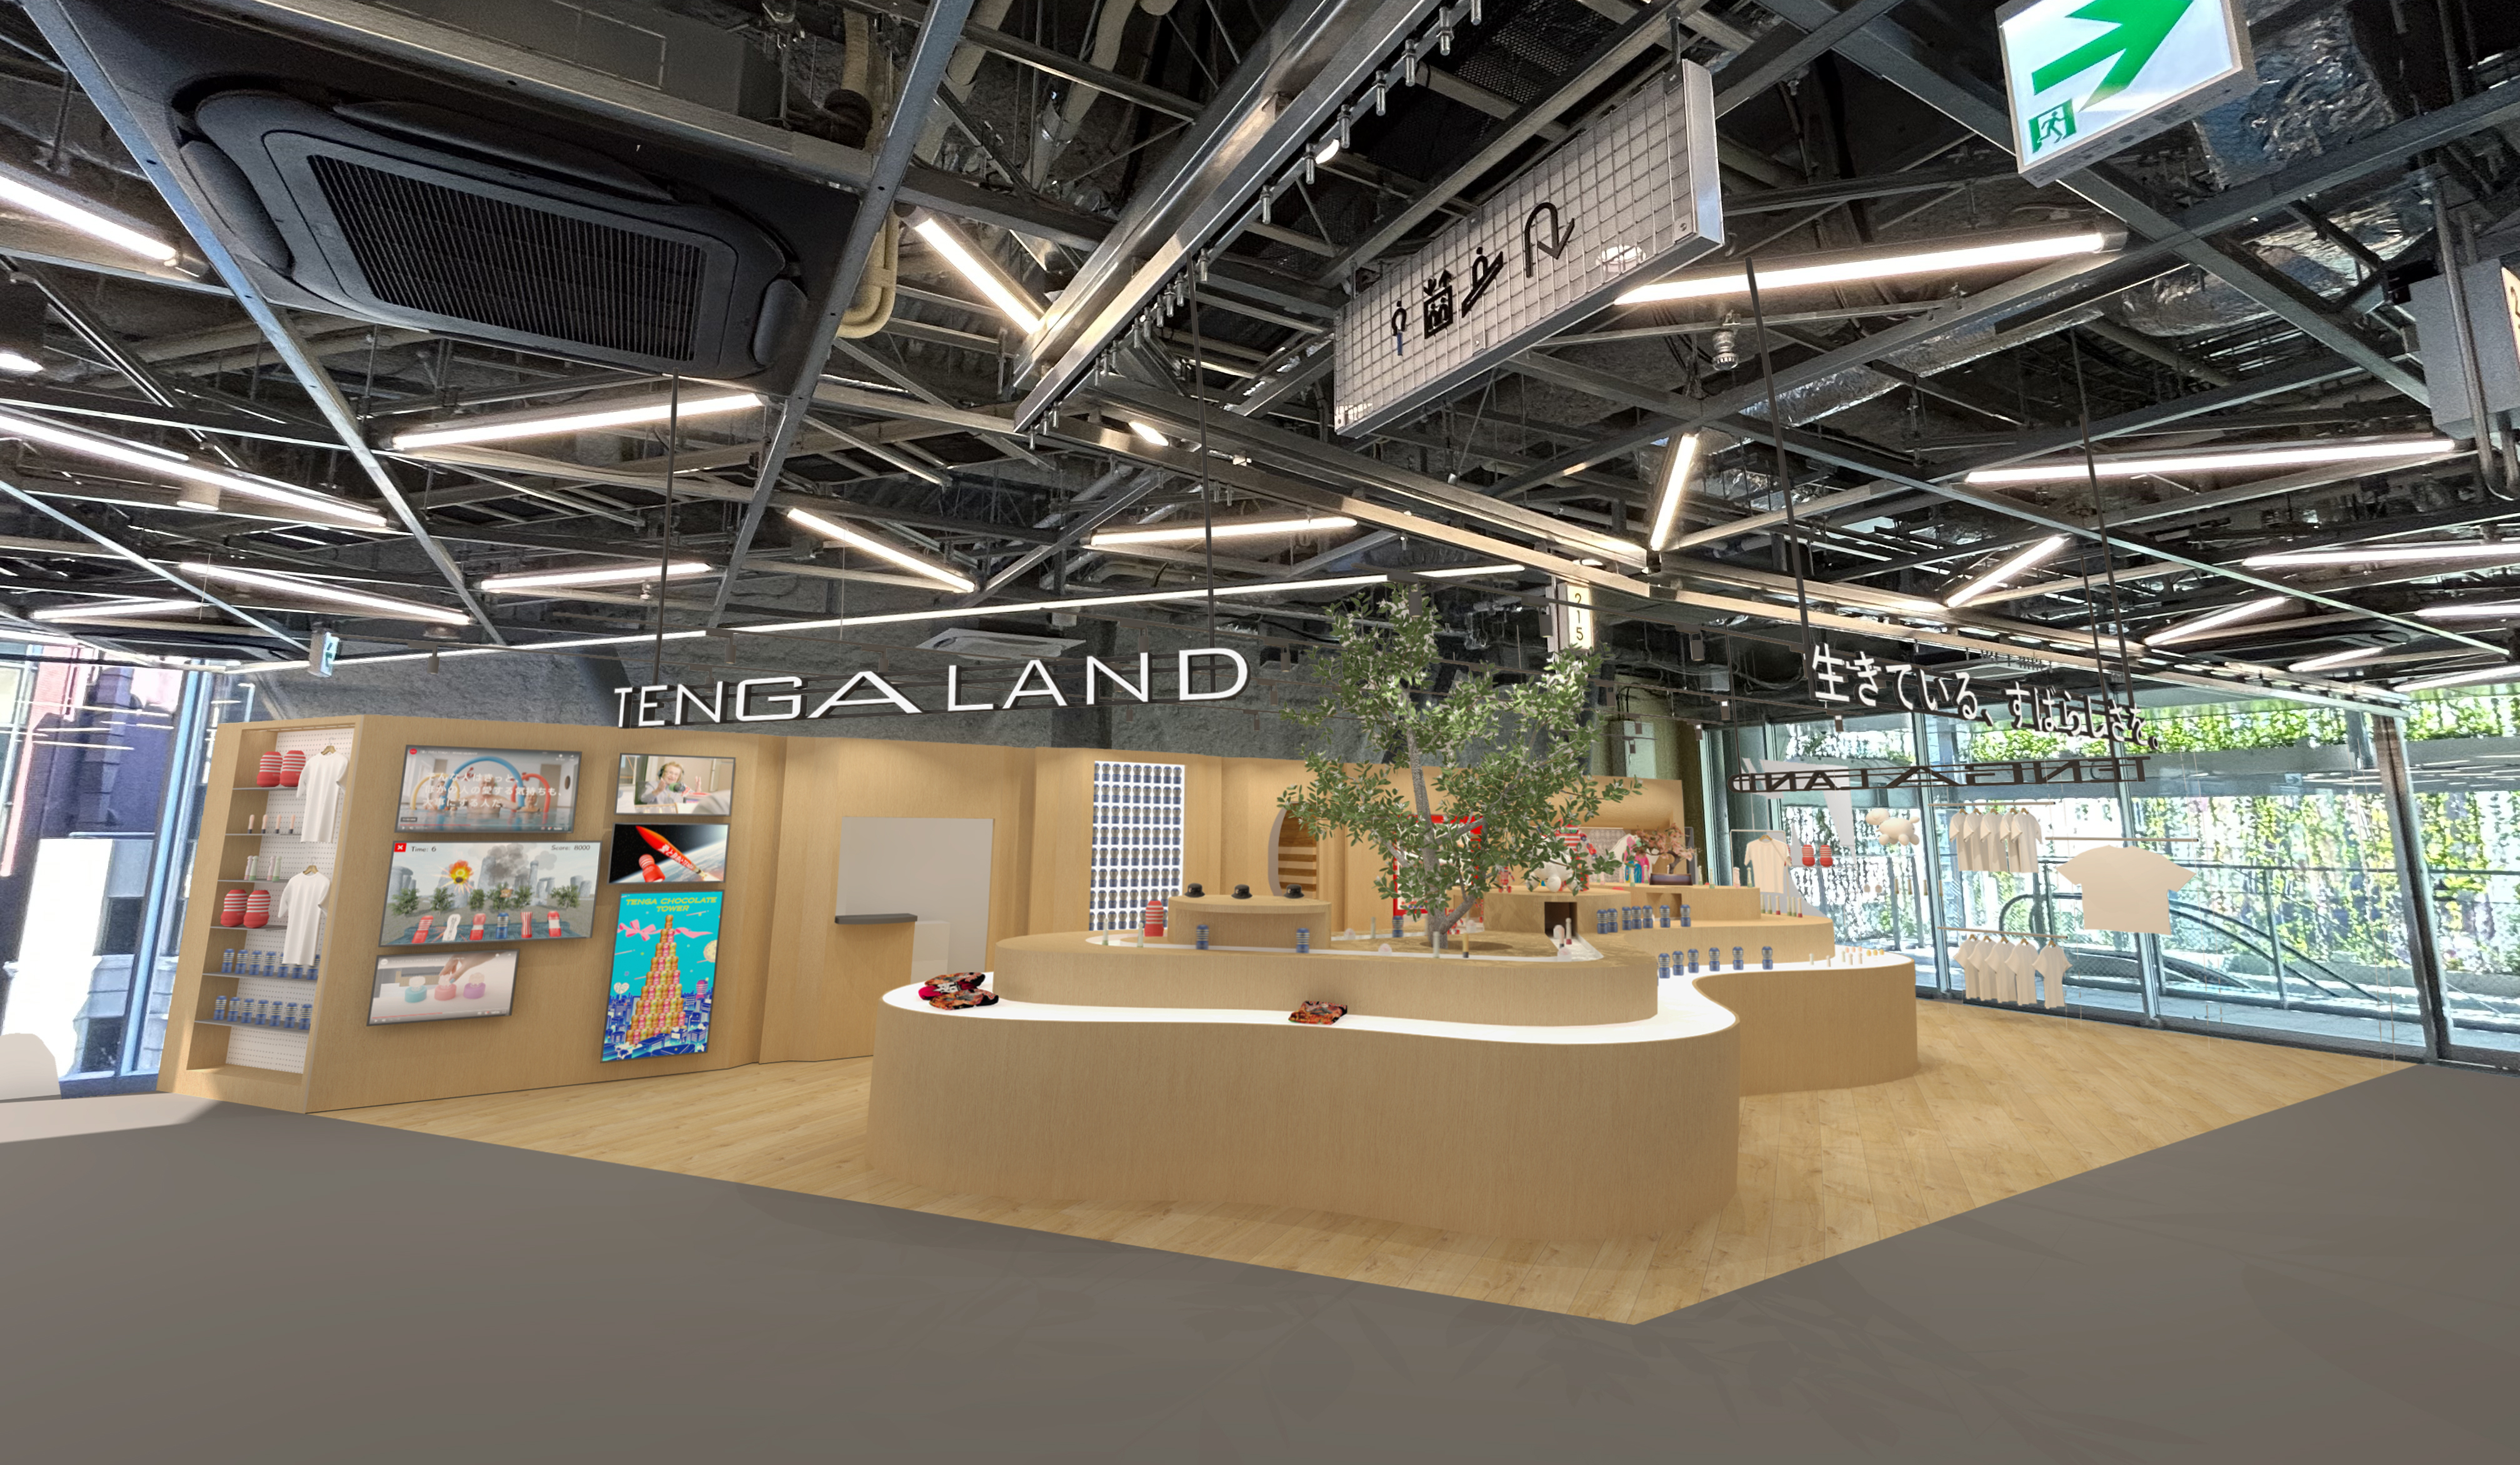 【アルバイト】直営店「TENGA LAND」の店舗販売員サムネイル